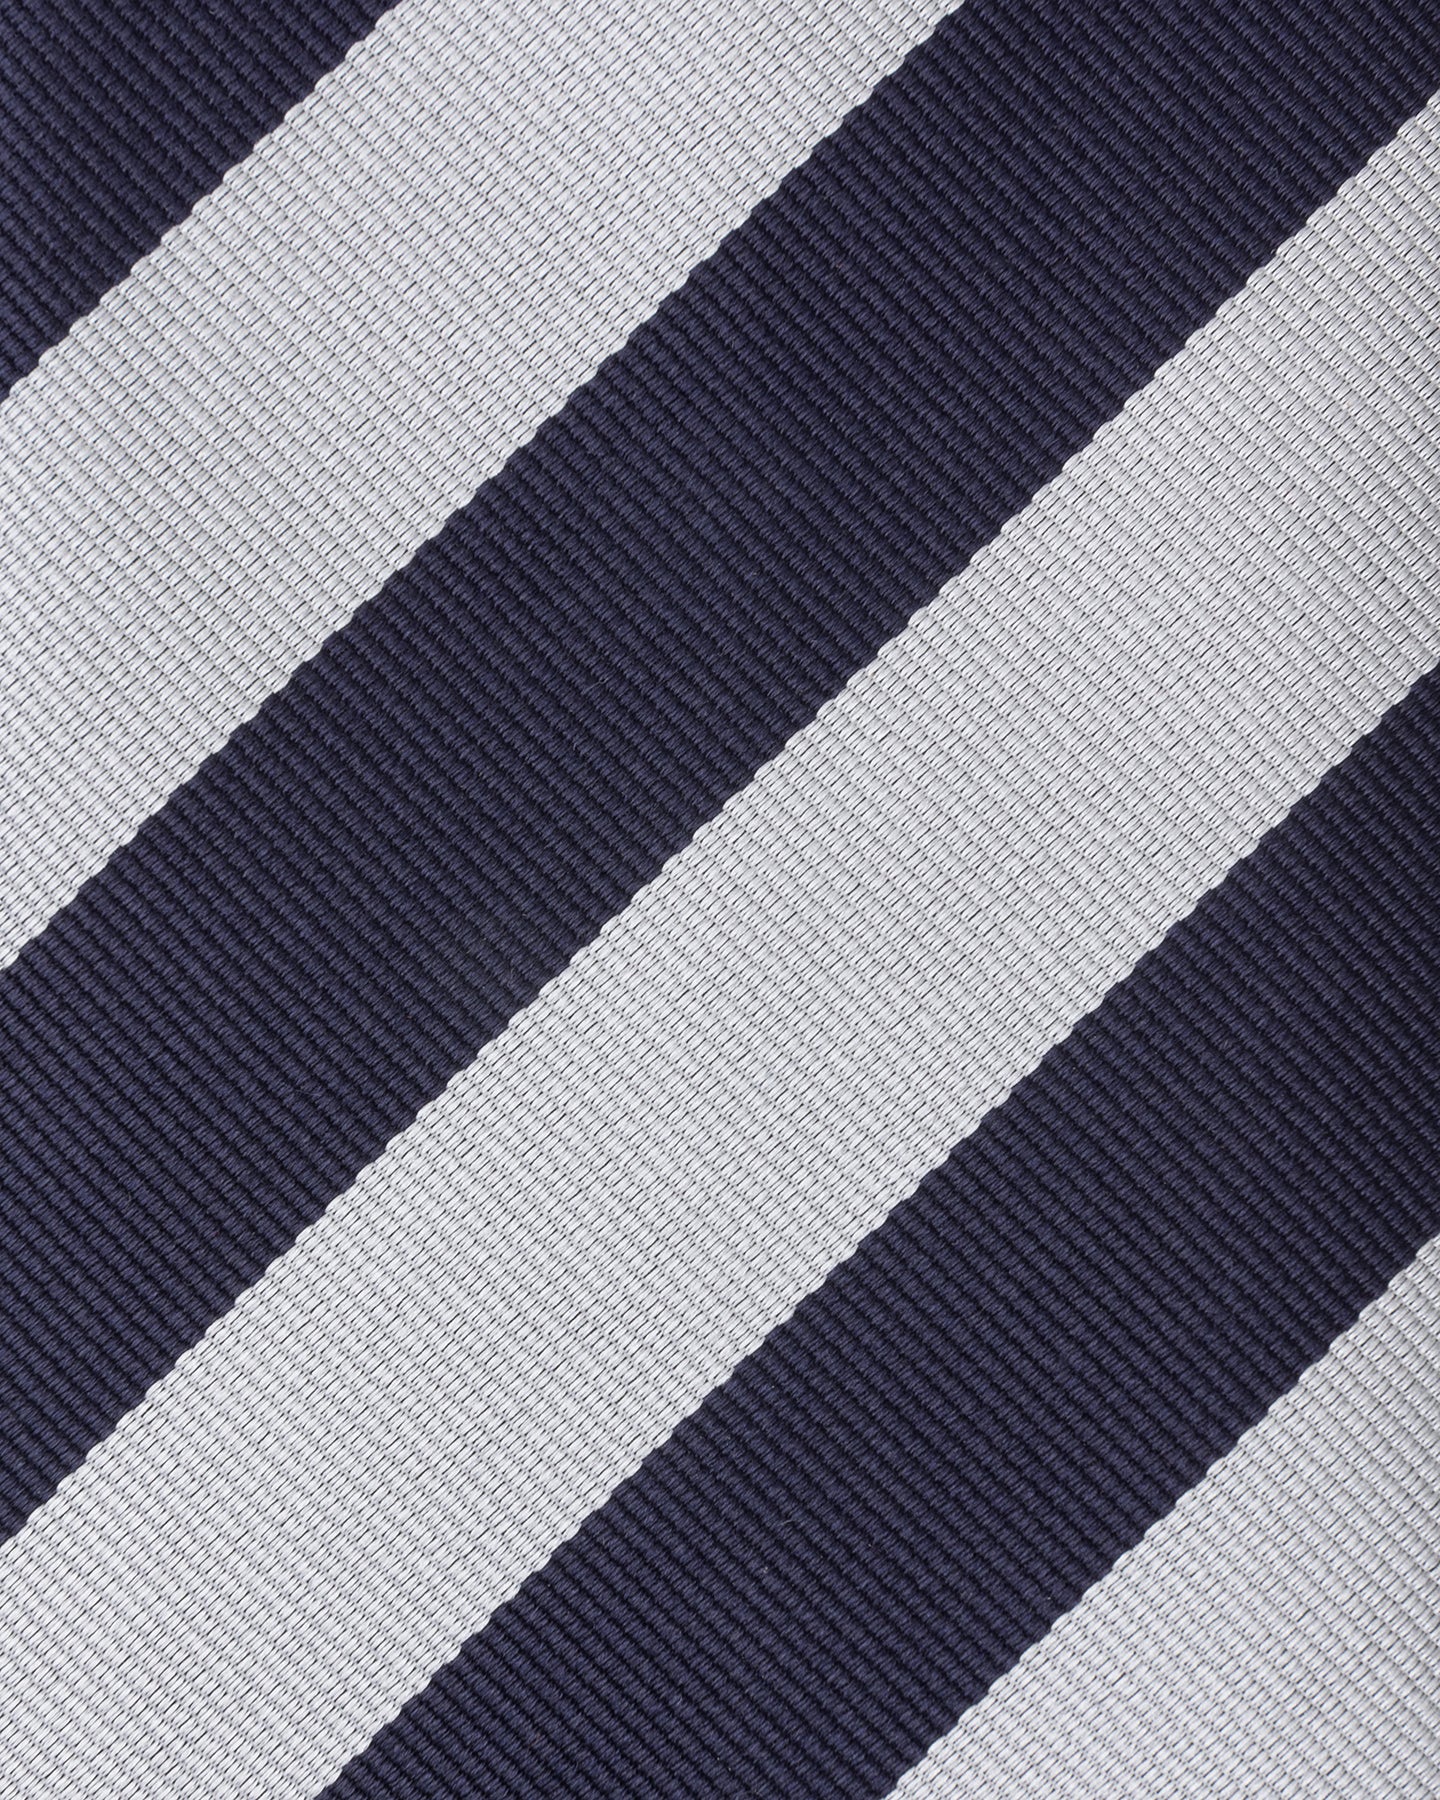 Navy and White Regimental Stripe Repp Tie